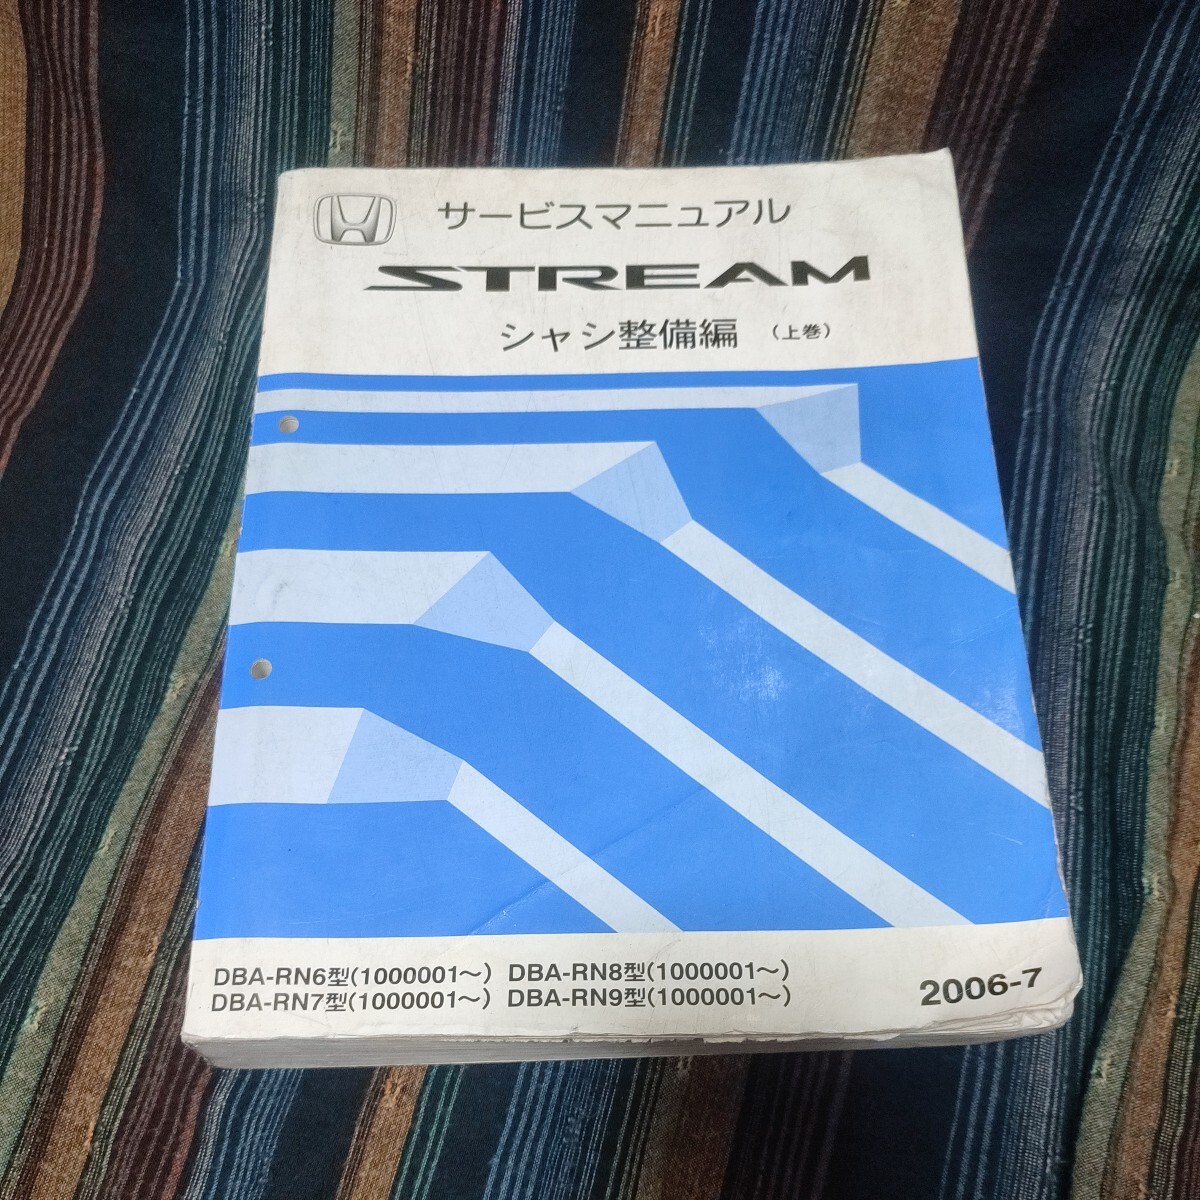 [1 иен начало распродажи ] Honda Stream STREAM руководство по обслуживанию шасси обслуживание сборник сверху шт 2006-7 RN type 